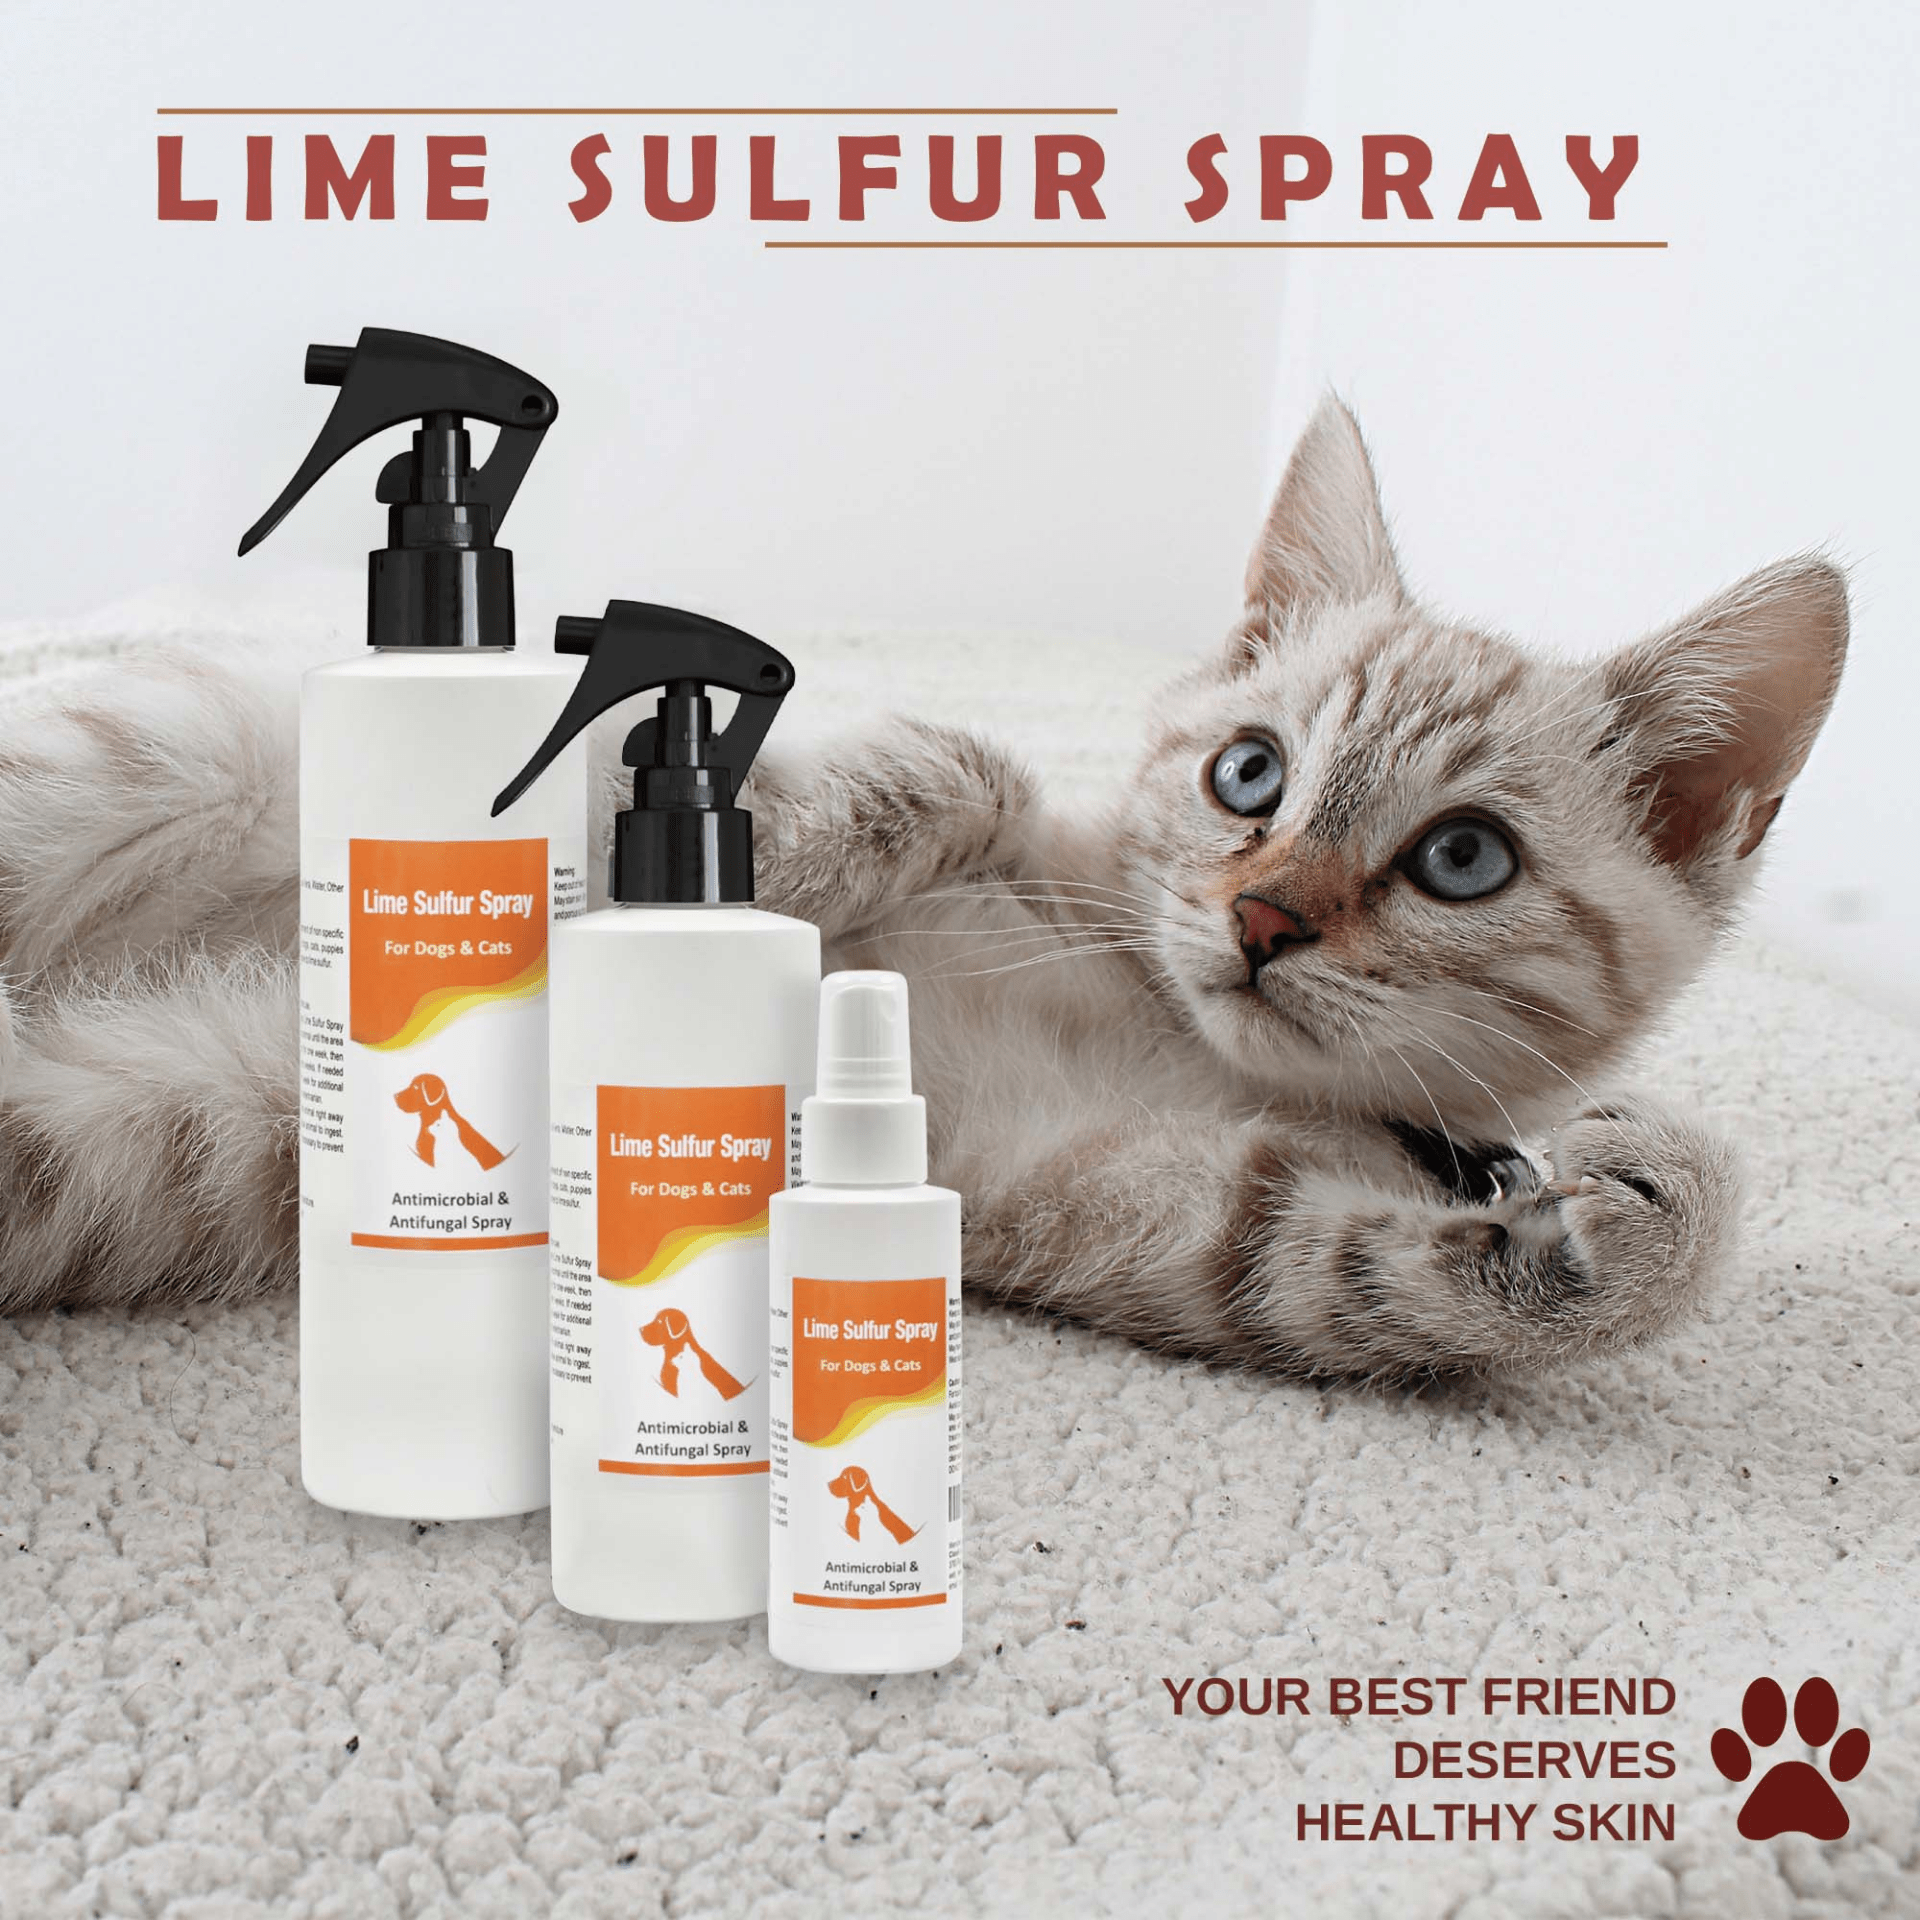 Dog and Pet Stuff Lime Sulfur Spray